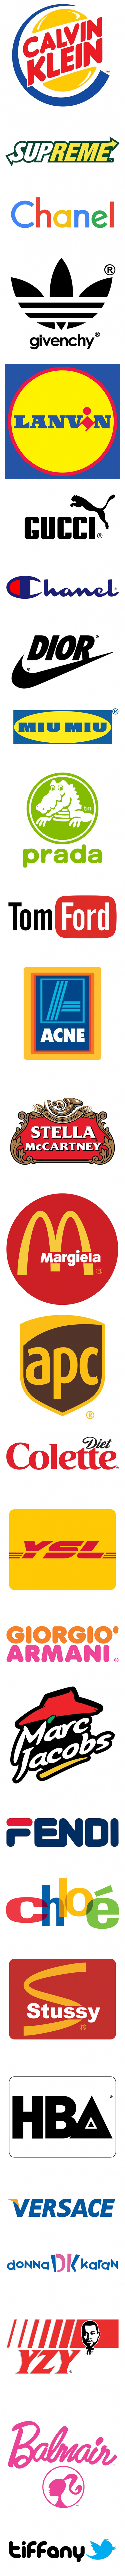 Meme_otros - Jugando a cambiar logos de marcas famosas